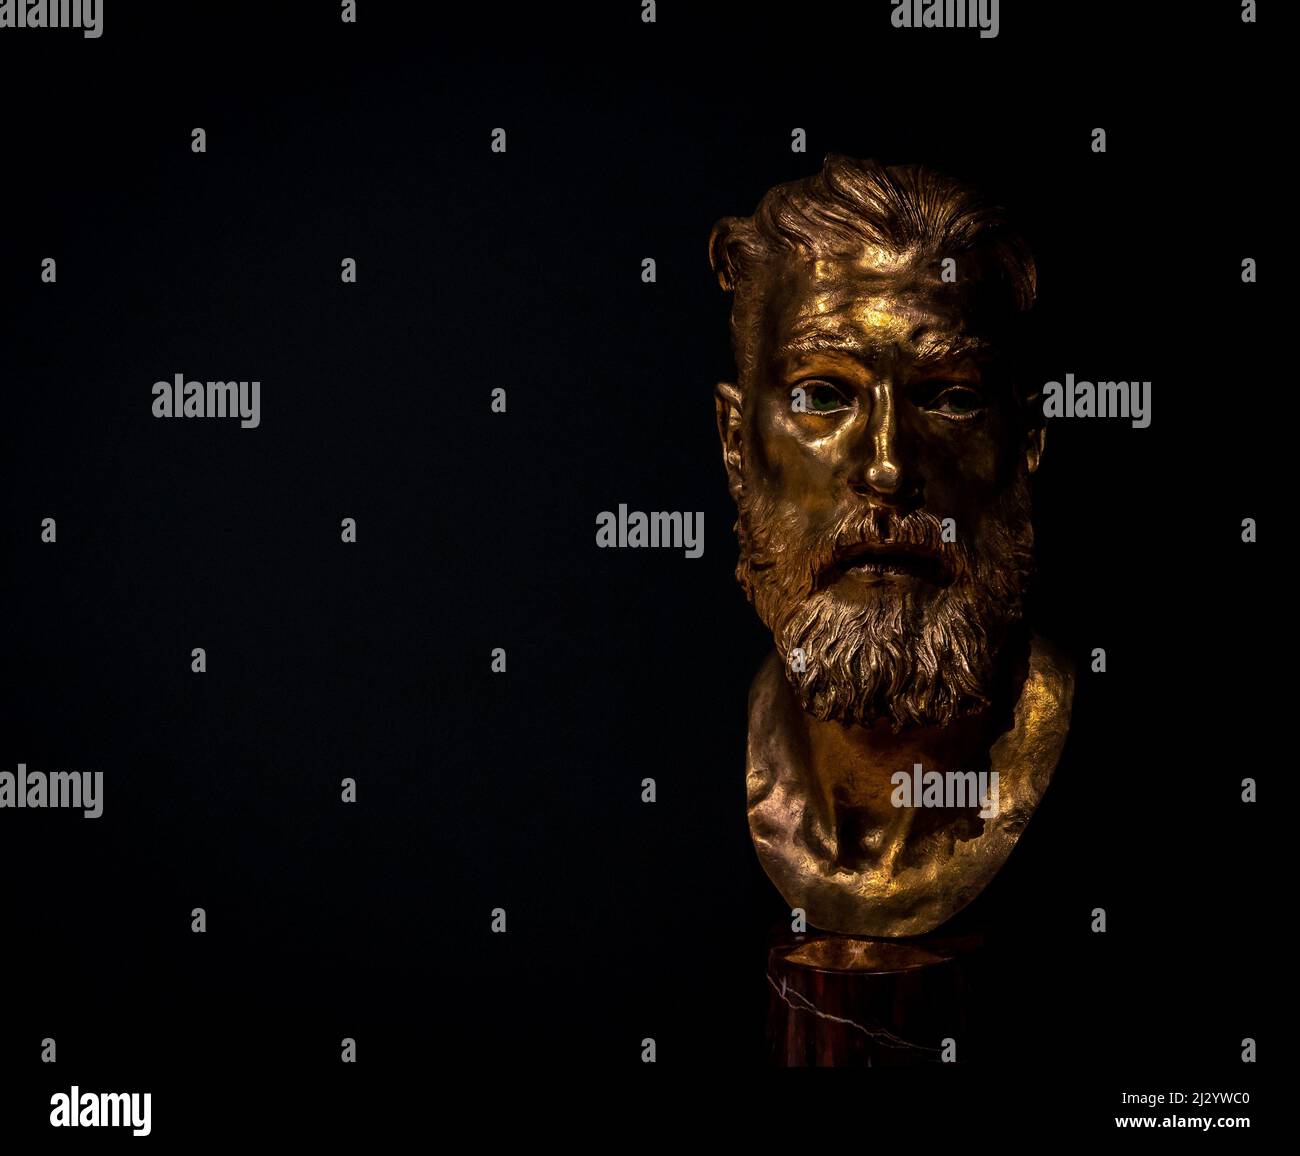 Âge d'or 3 - sculpture en bronze de l'artiste Livio Scarpella exposée au Musée d'art moderne et contemporain - MART - Rovereto - Italie Banque D'Images